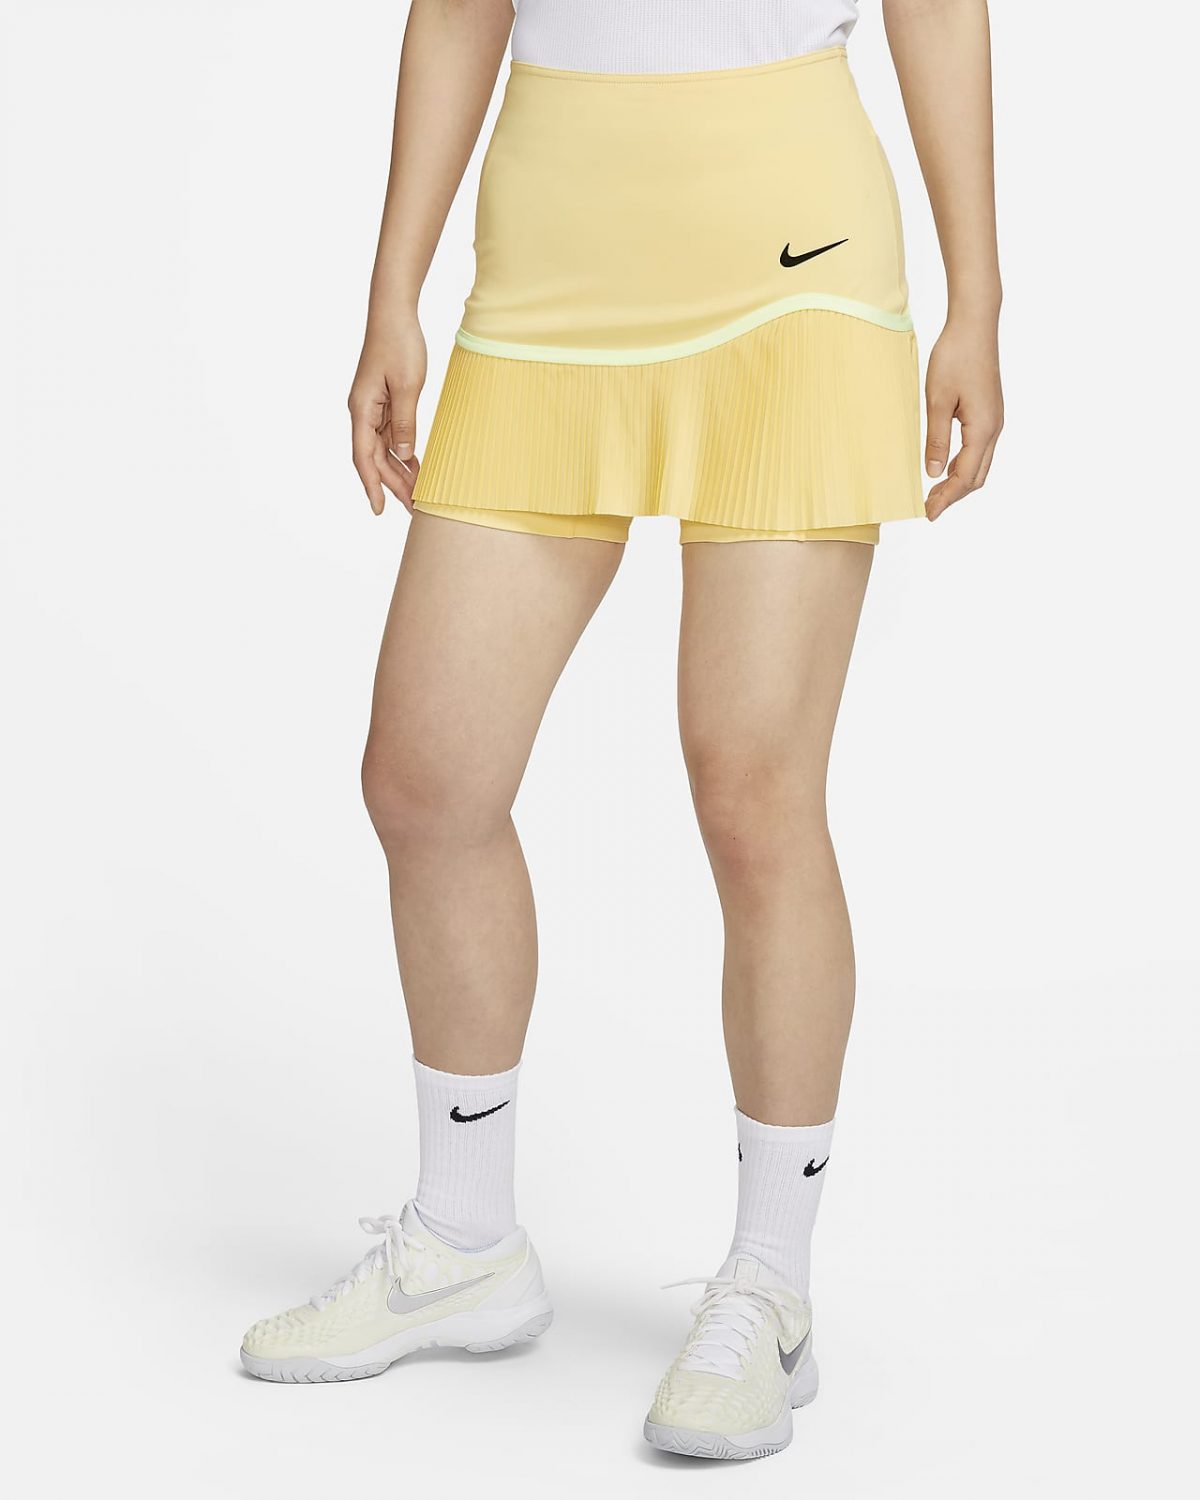 Женская юбка Nike Advantage фото